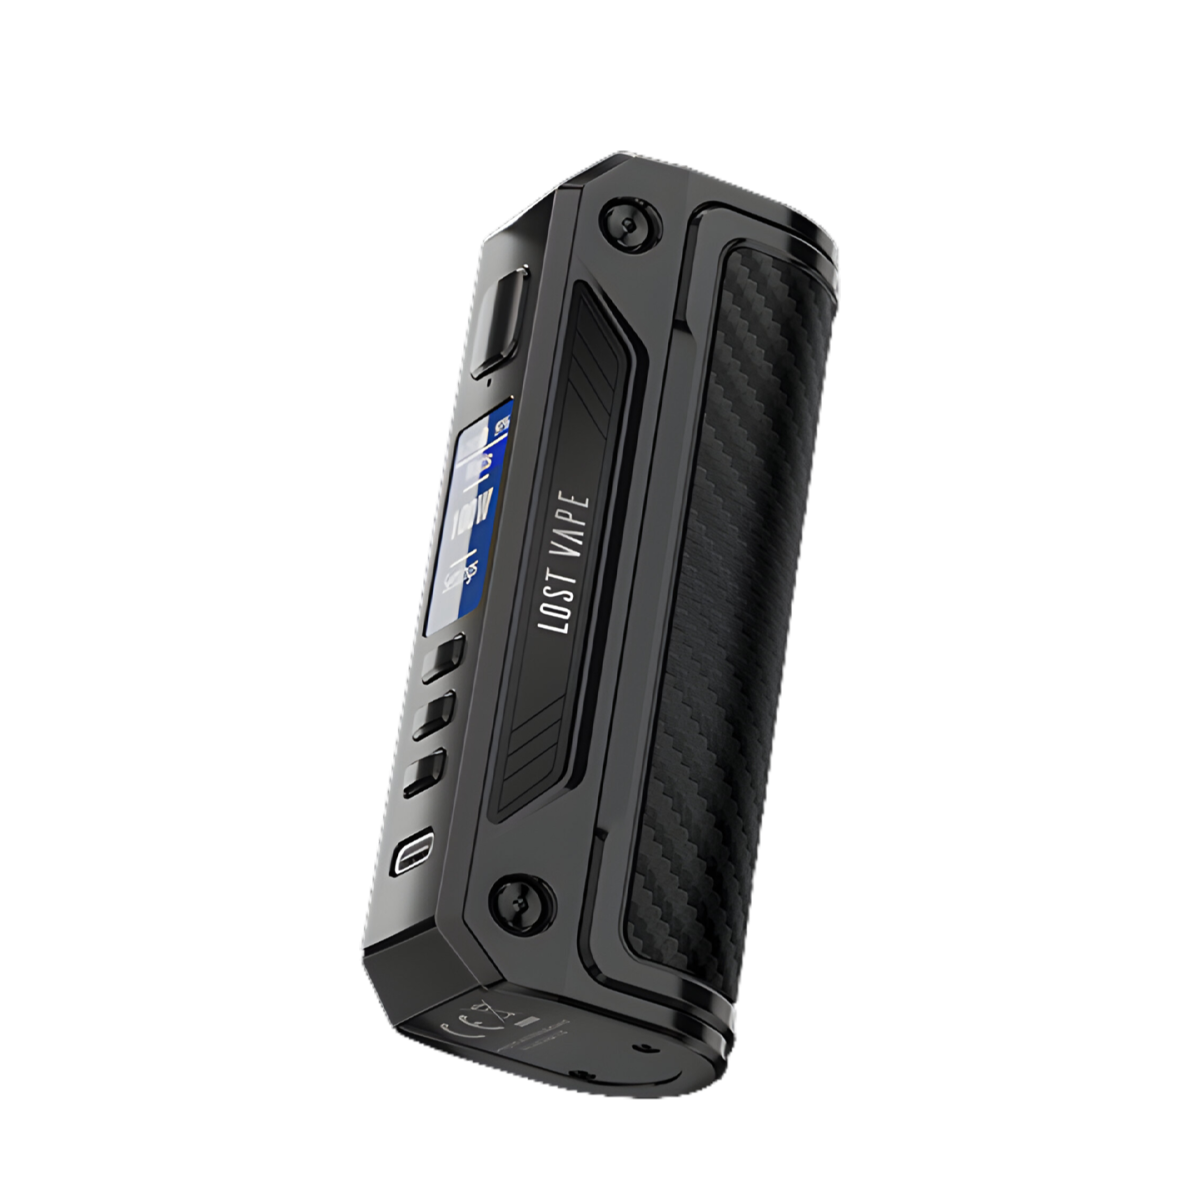 Lost Vape Thelema Solo DNA 100C Box-Mod Kit Black/Carbon Fiber  